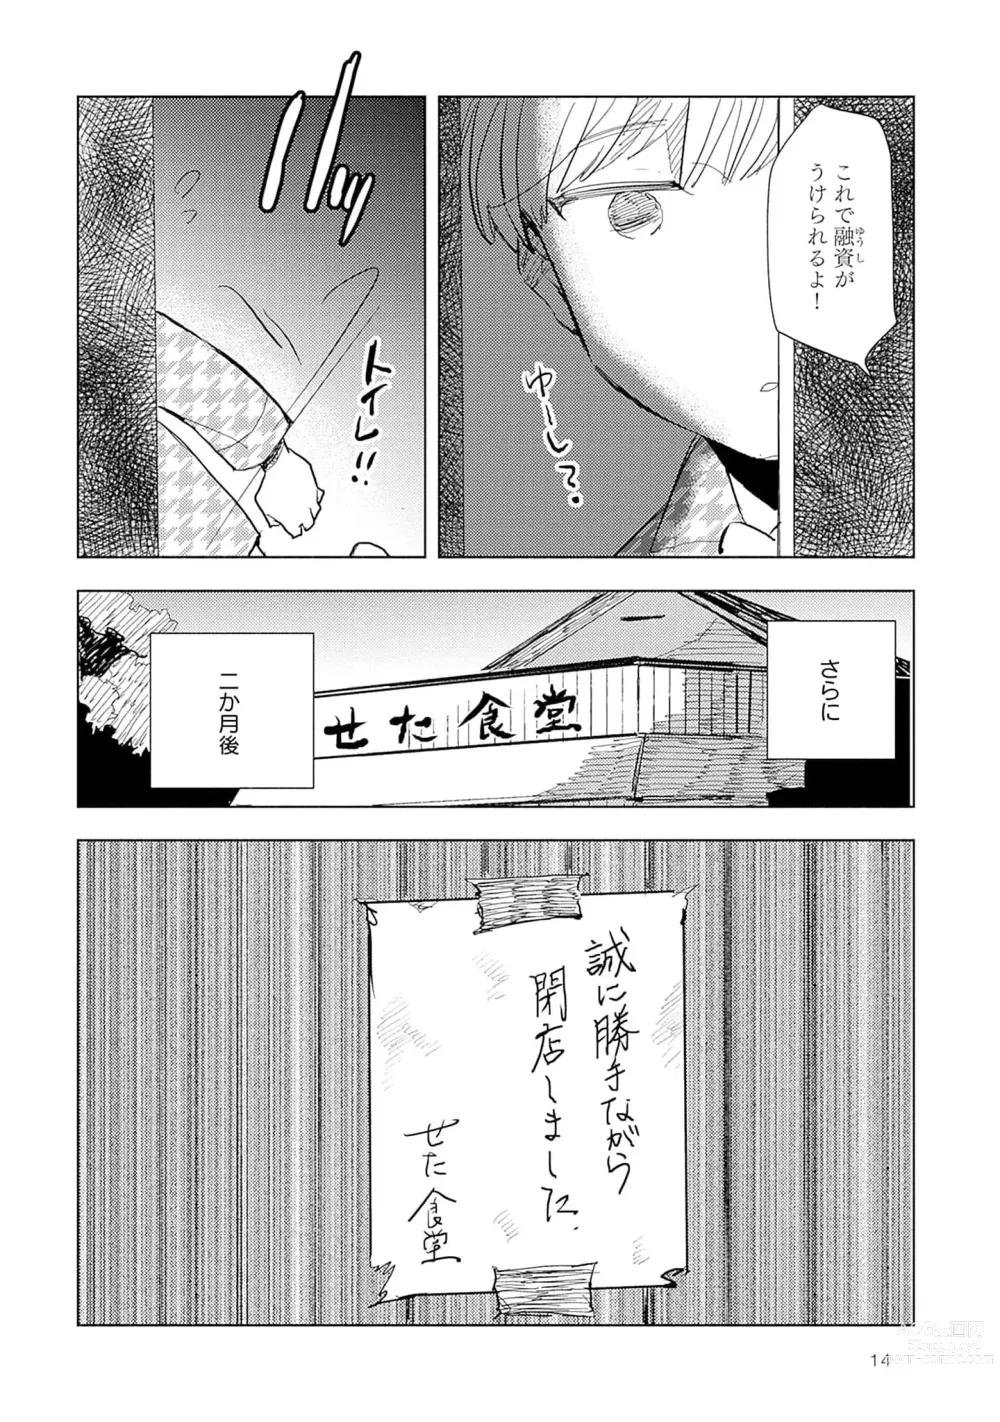 Page 16 of manga Strawberry na Days 2